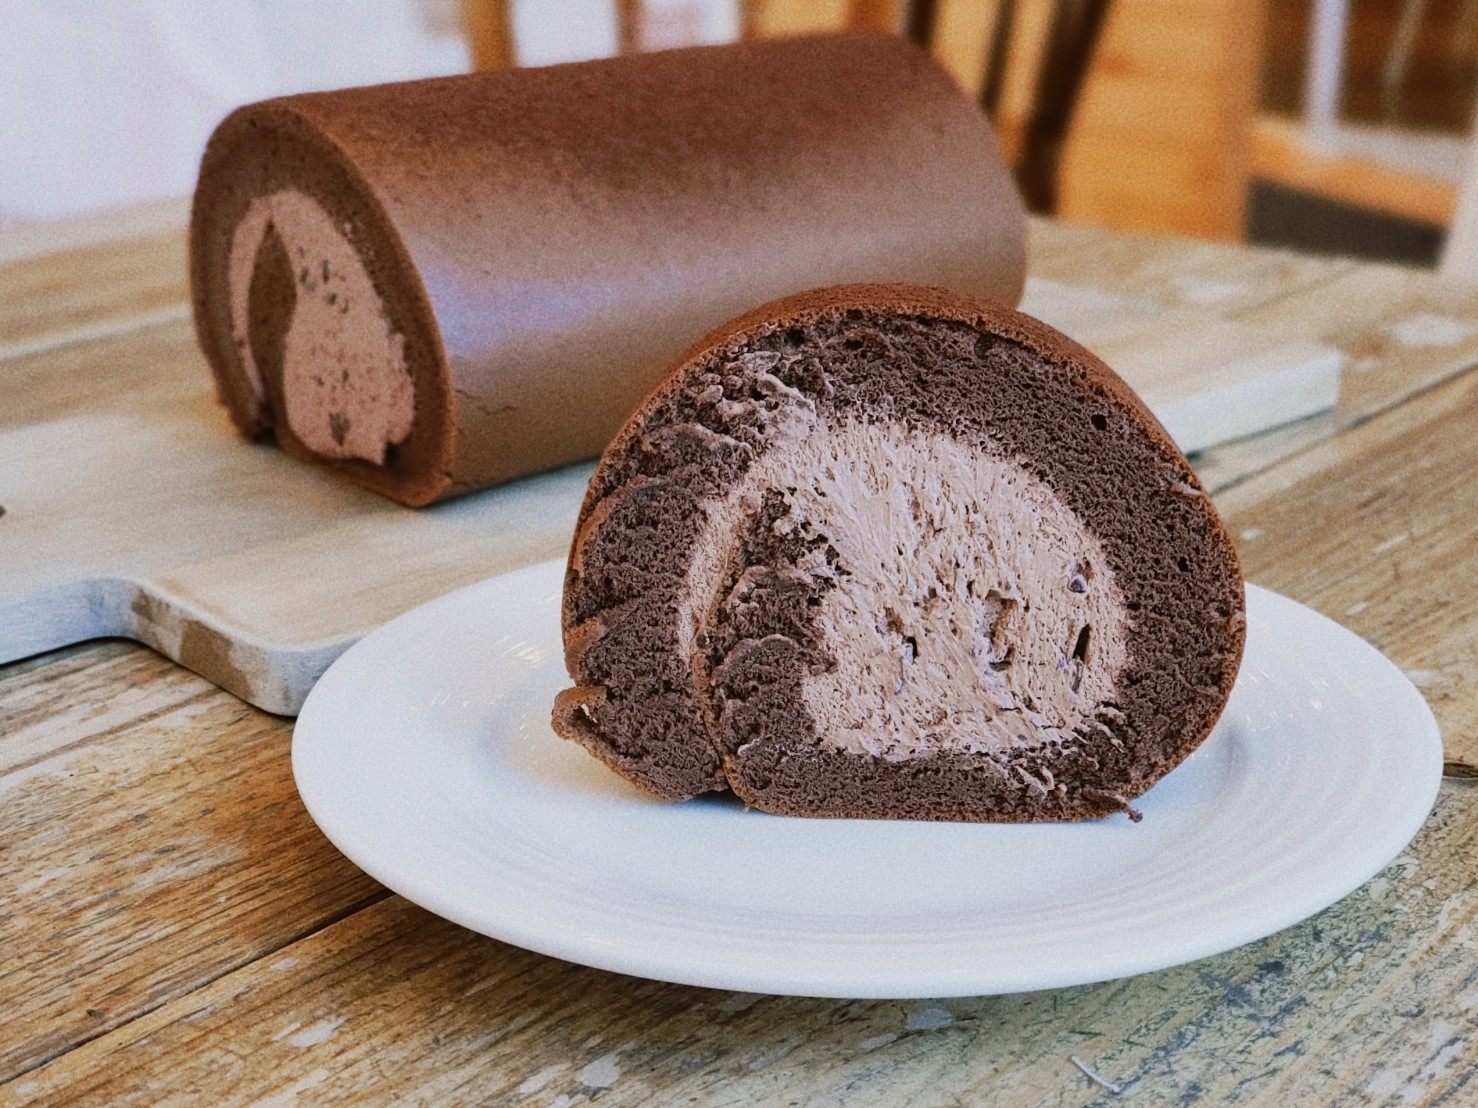 2021 亞尼克 10 款秋冬限定口味甜點推薦！濃厚系巧克力生乳捲、栗子蛋糕就算胖死也要吃！